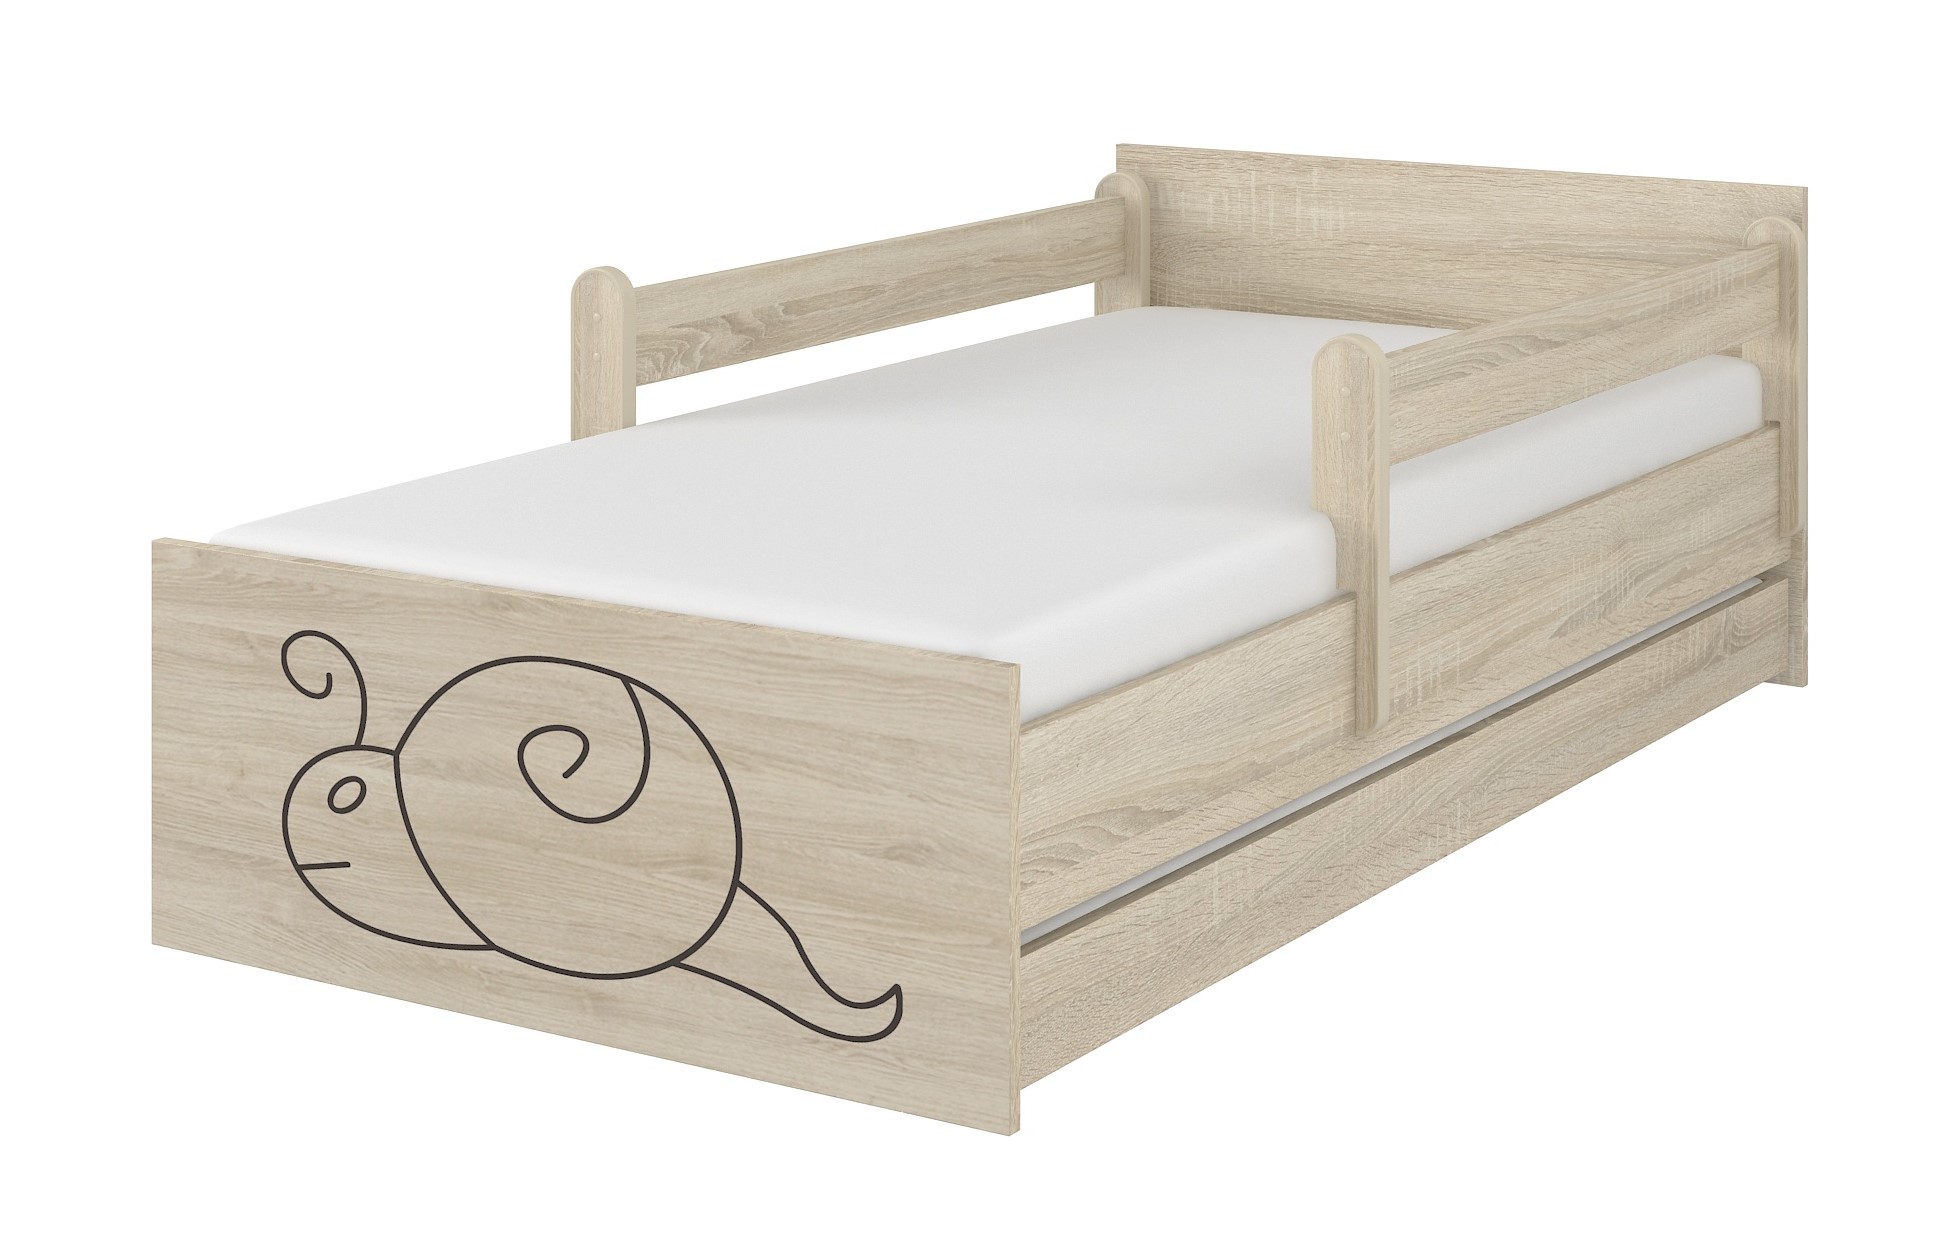 Detská postel sonoma gravírovaný slimák+ zábrany160x80